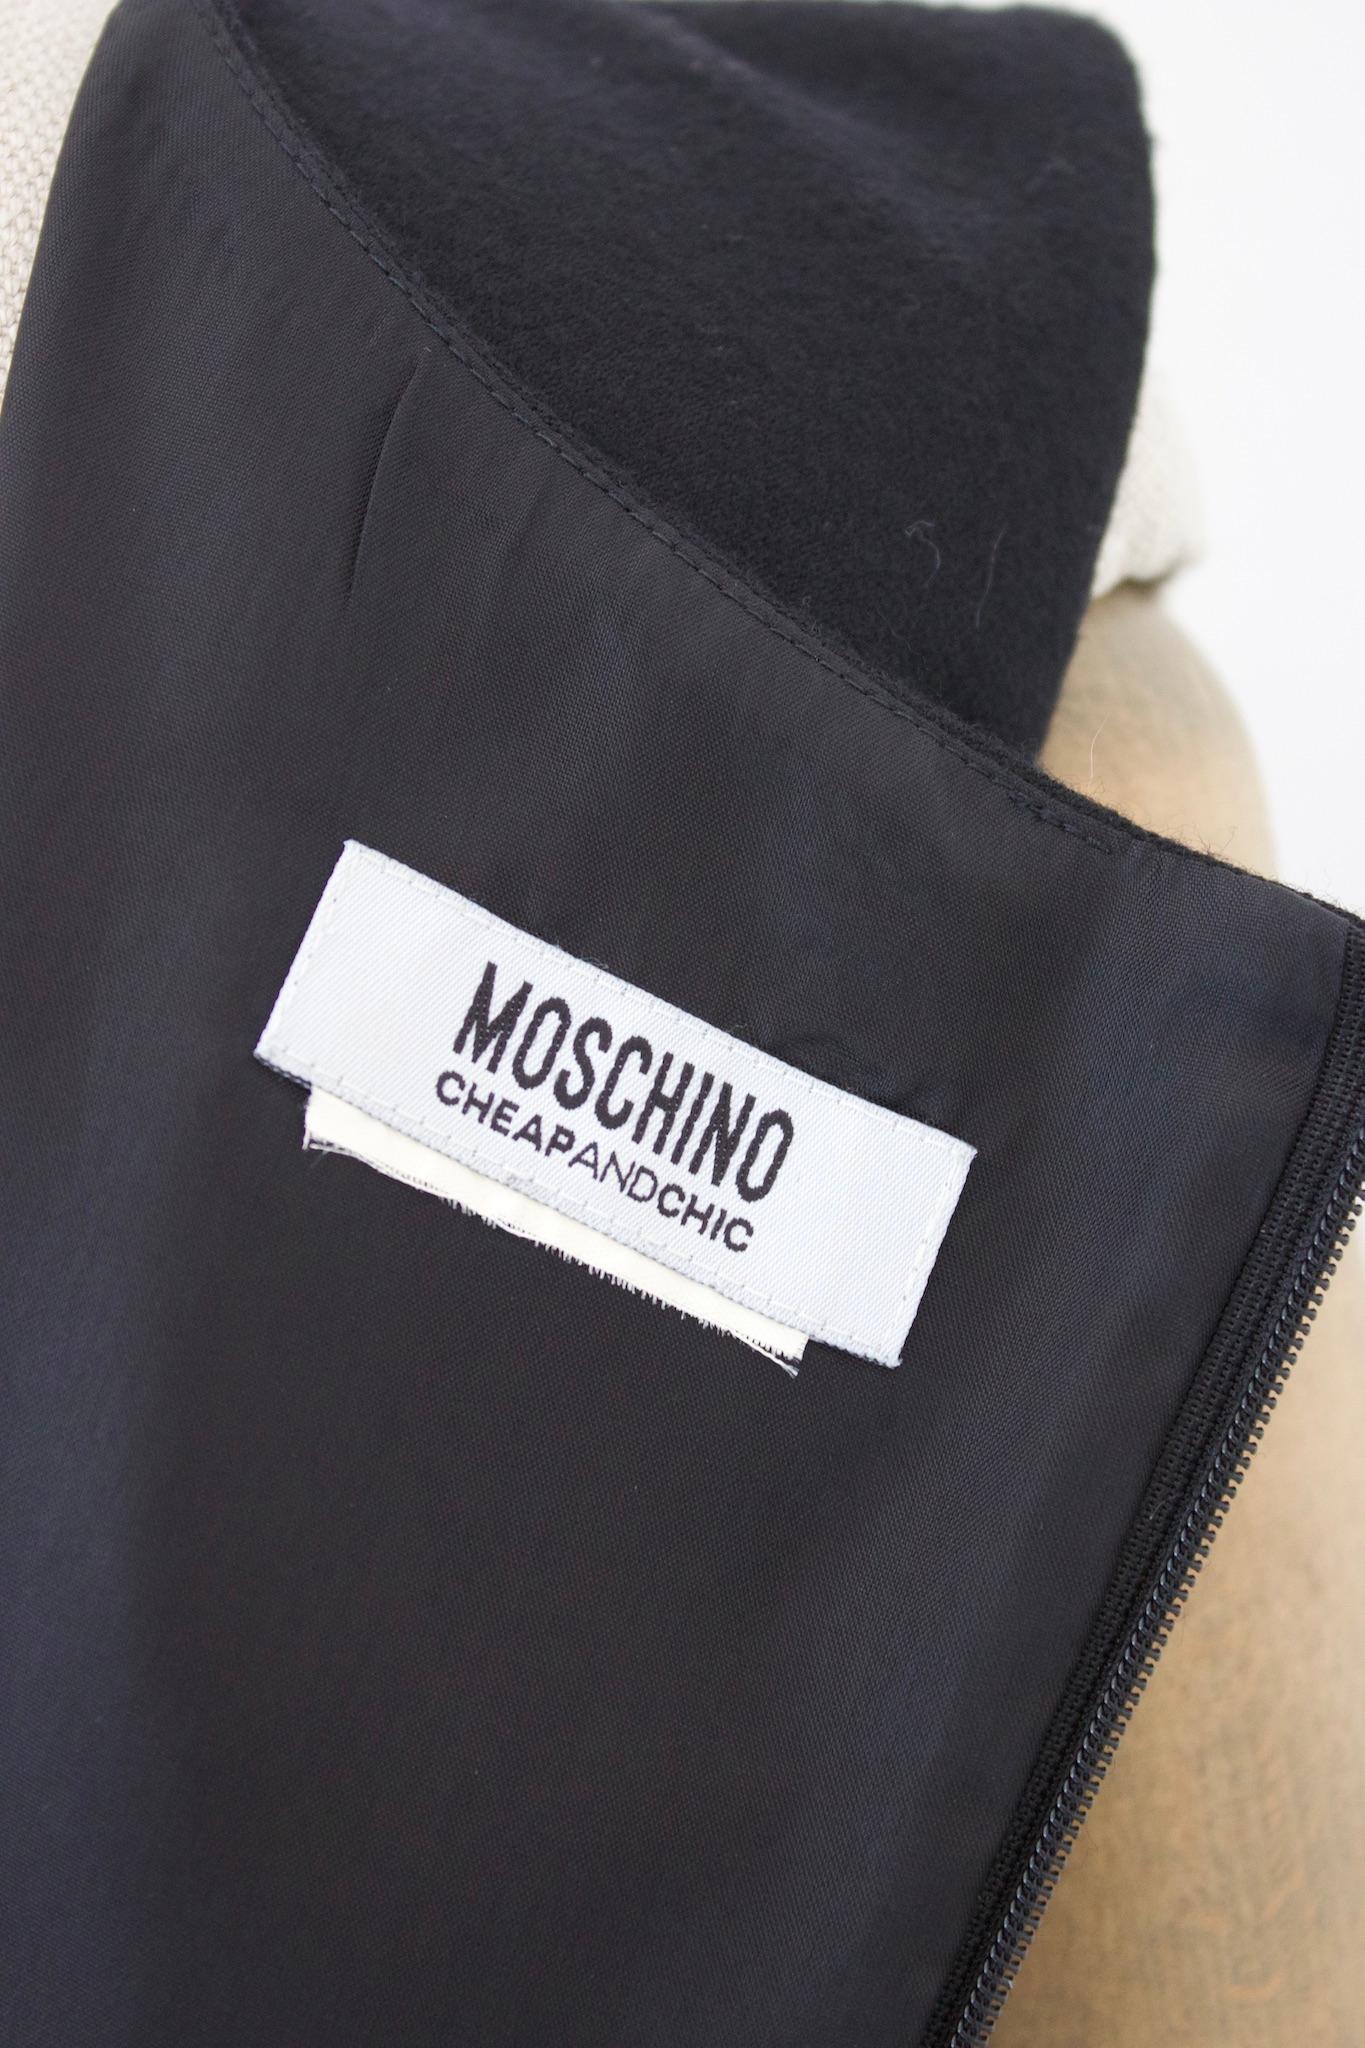 Moschino Cheap and Chic schwarzes Etuikleid im Vintage-Stil der 2000er Jahre ist ein zeitloses Stück aus hochwertiger Wolle. Das Kleid ist elegant und raffiniert, mit einem einfachen, aber klassischen Design, das nie aus der Mode kommen wird. Dieses